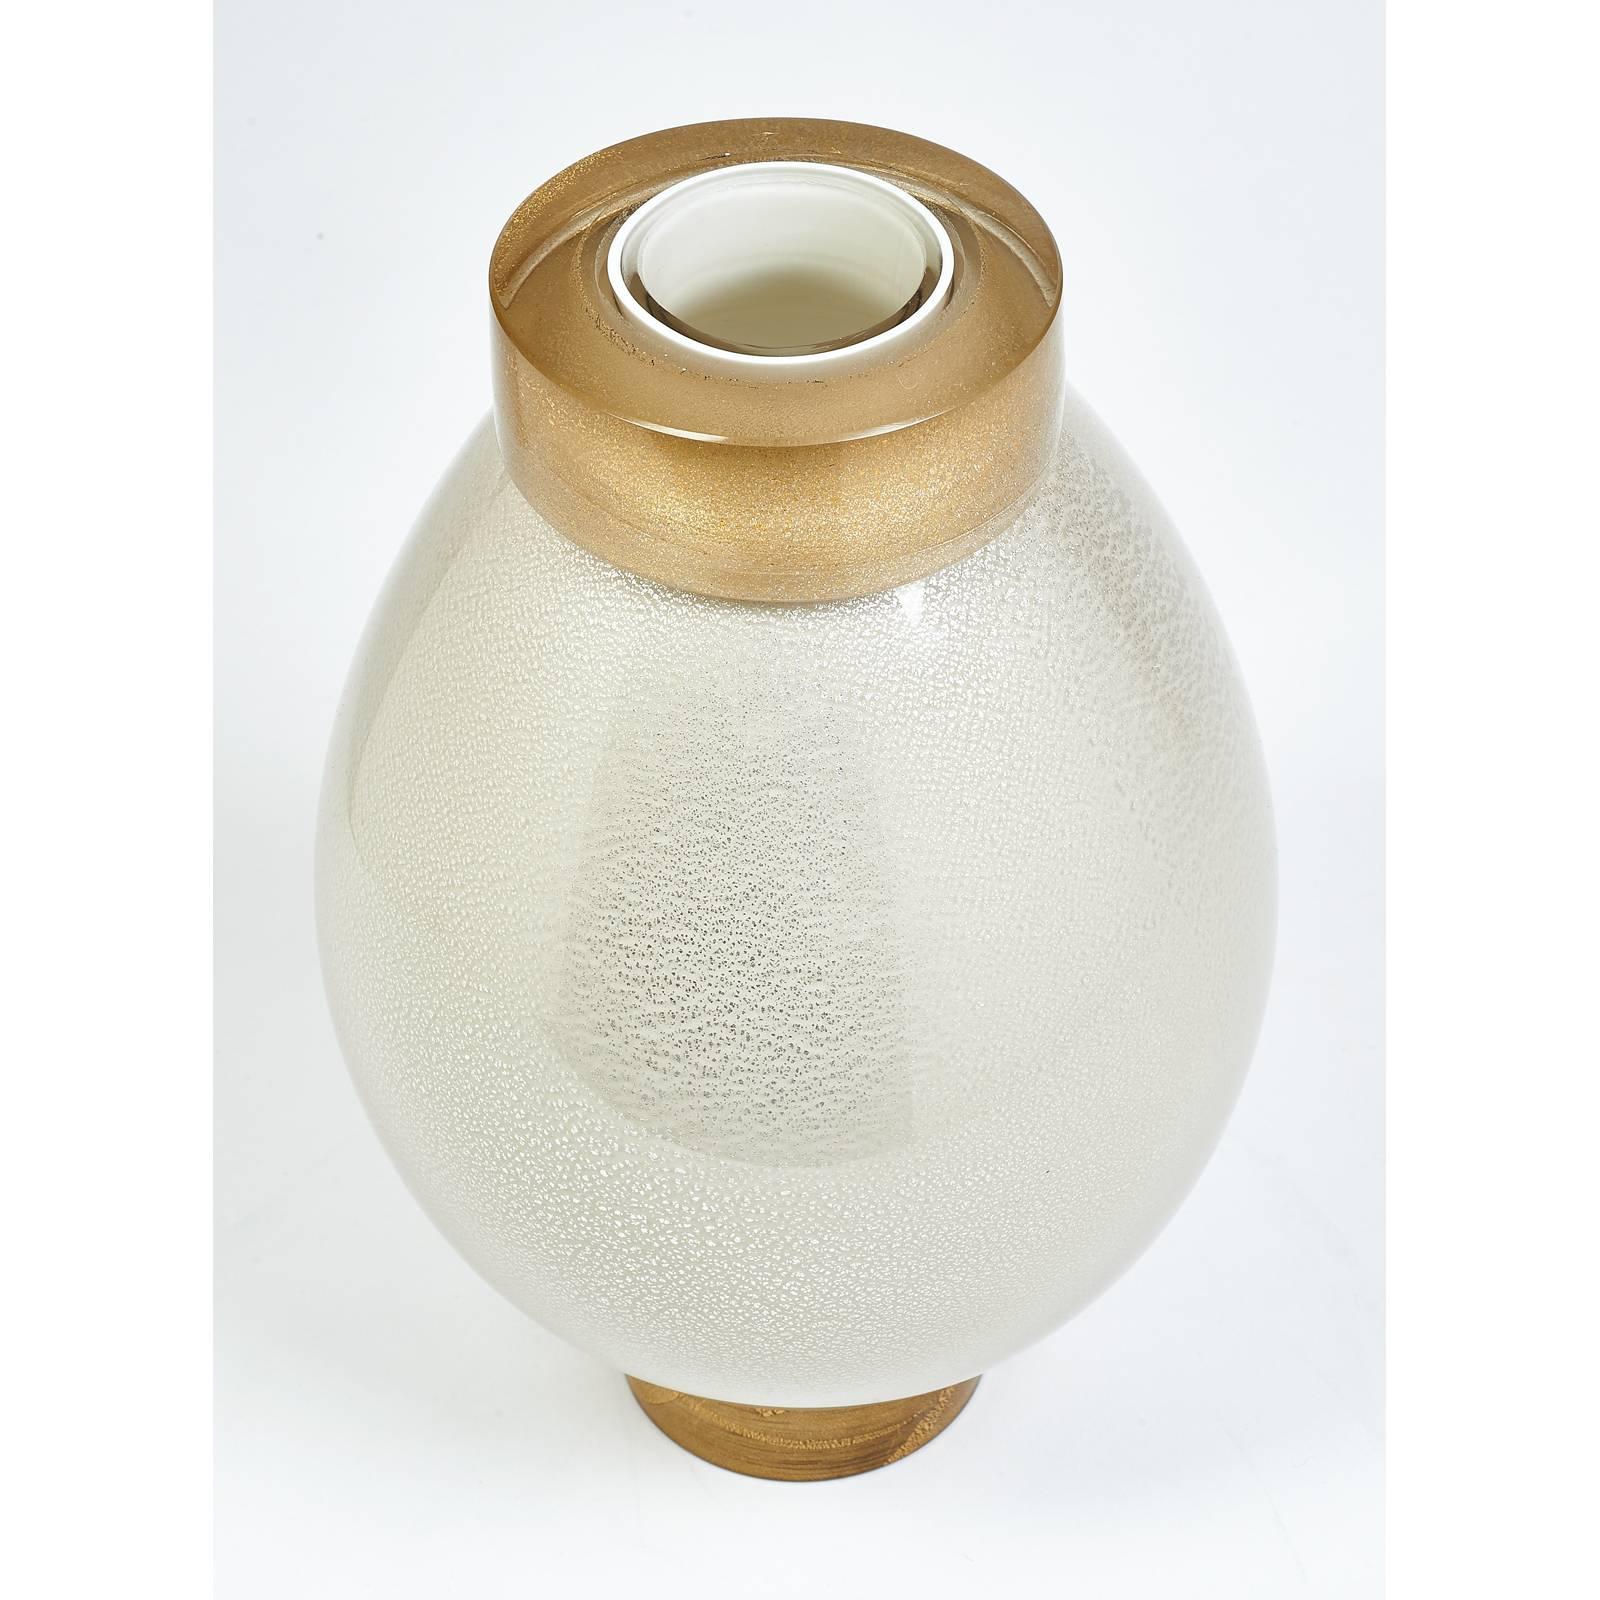 Italien, zeitgenössisch
Eine exquisite Vase aus geblasenem Glas, nach Art von Seguso
Mehrere Schichten aus Klar- und Opalglas gesprenkelt
mit Blattgold (Kragen und Sockel) und Blattsilber (Korpus)
Einer verfügbar.
Maße: 12 Höhe x 7 Durchmesser.